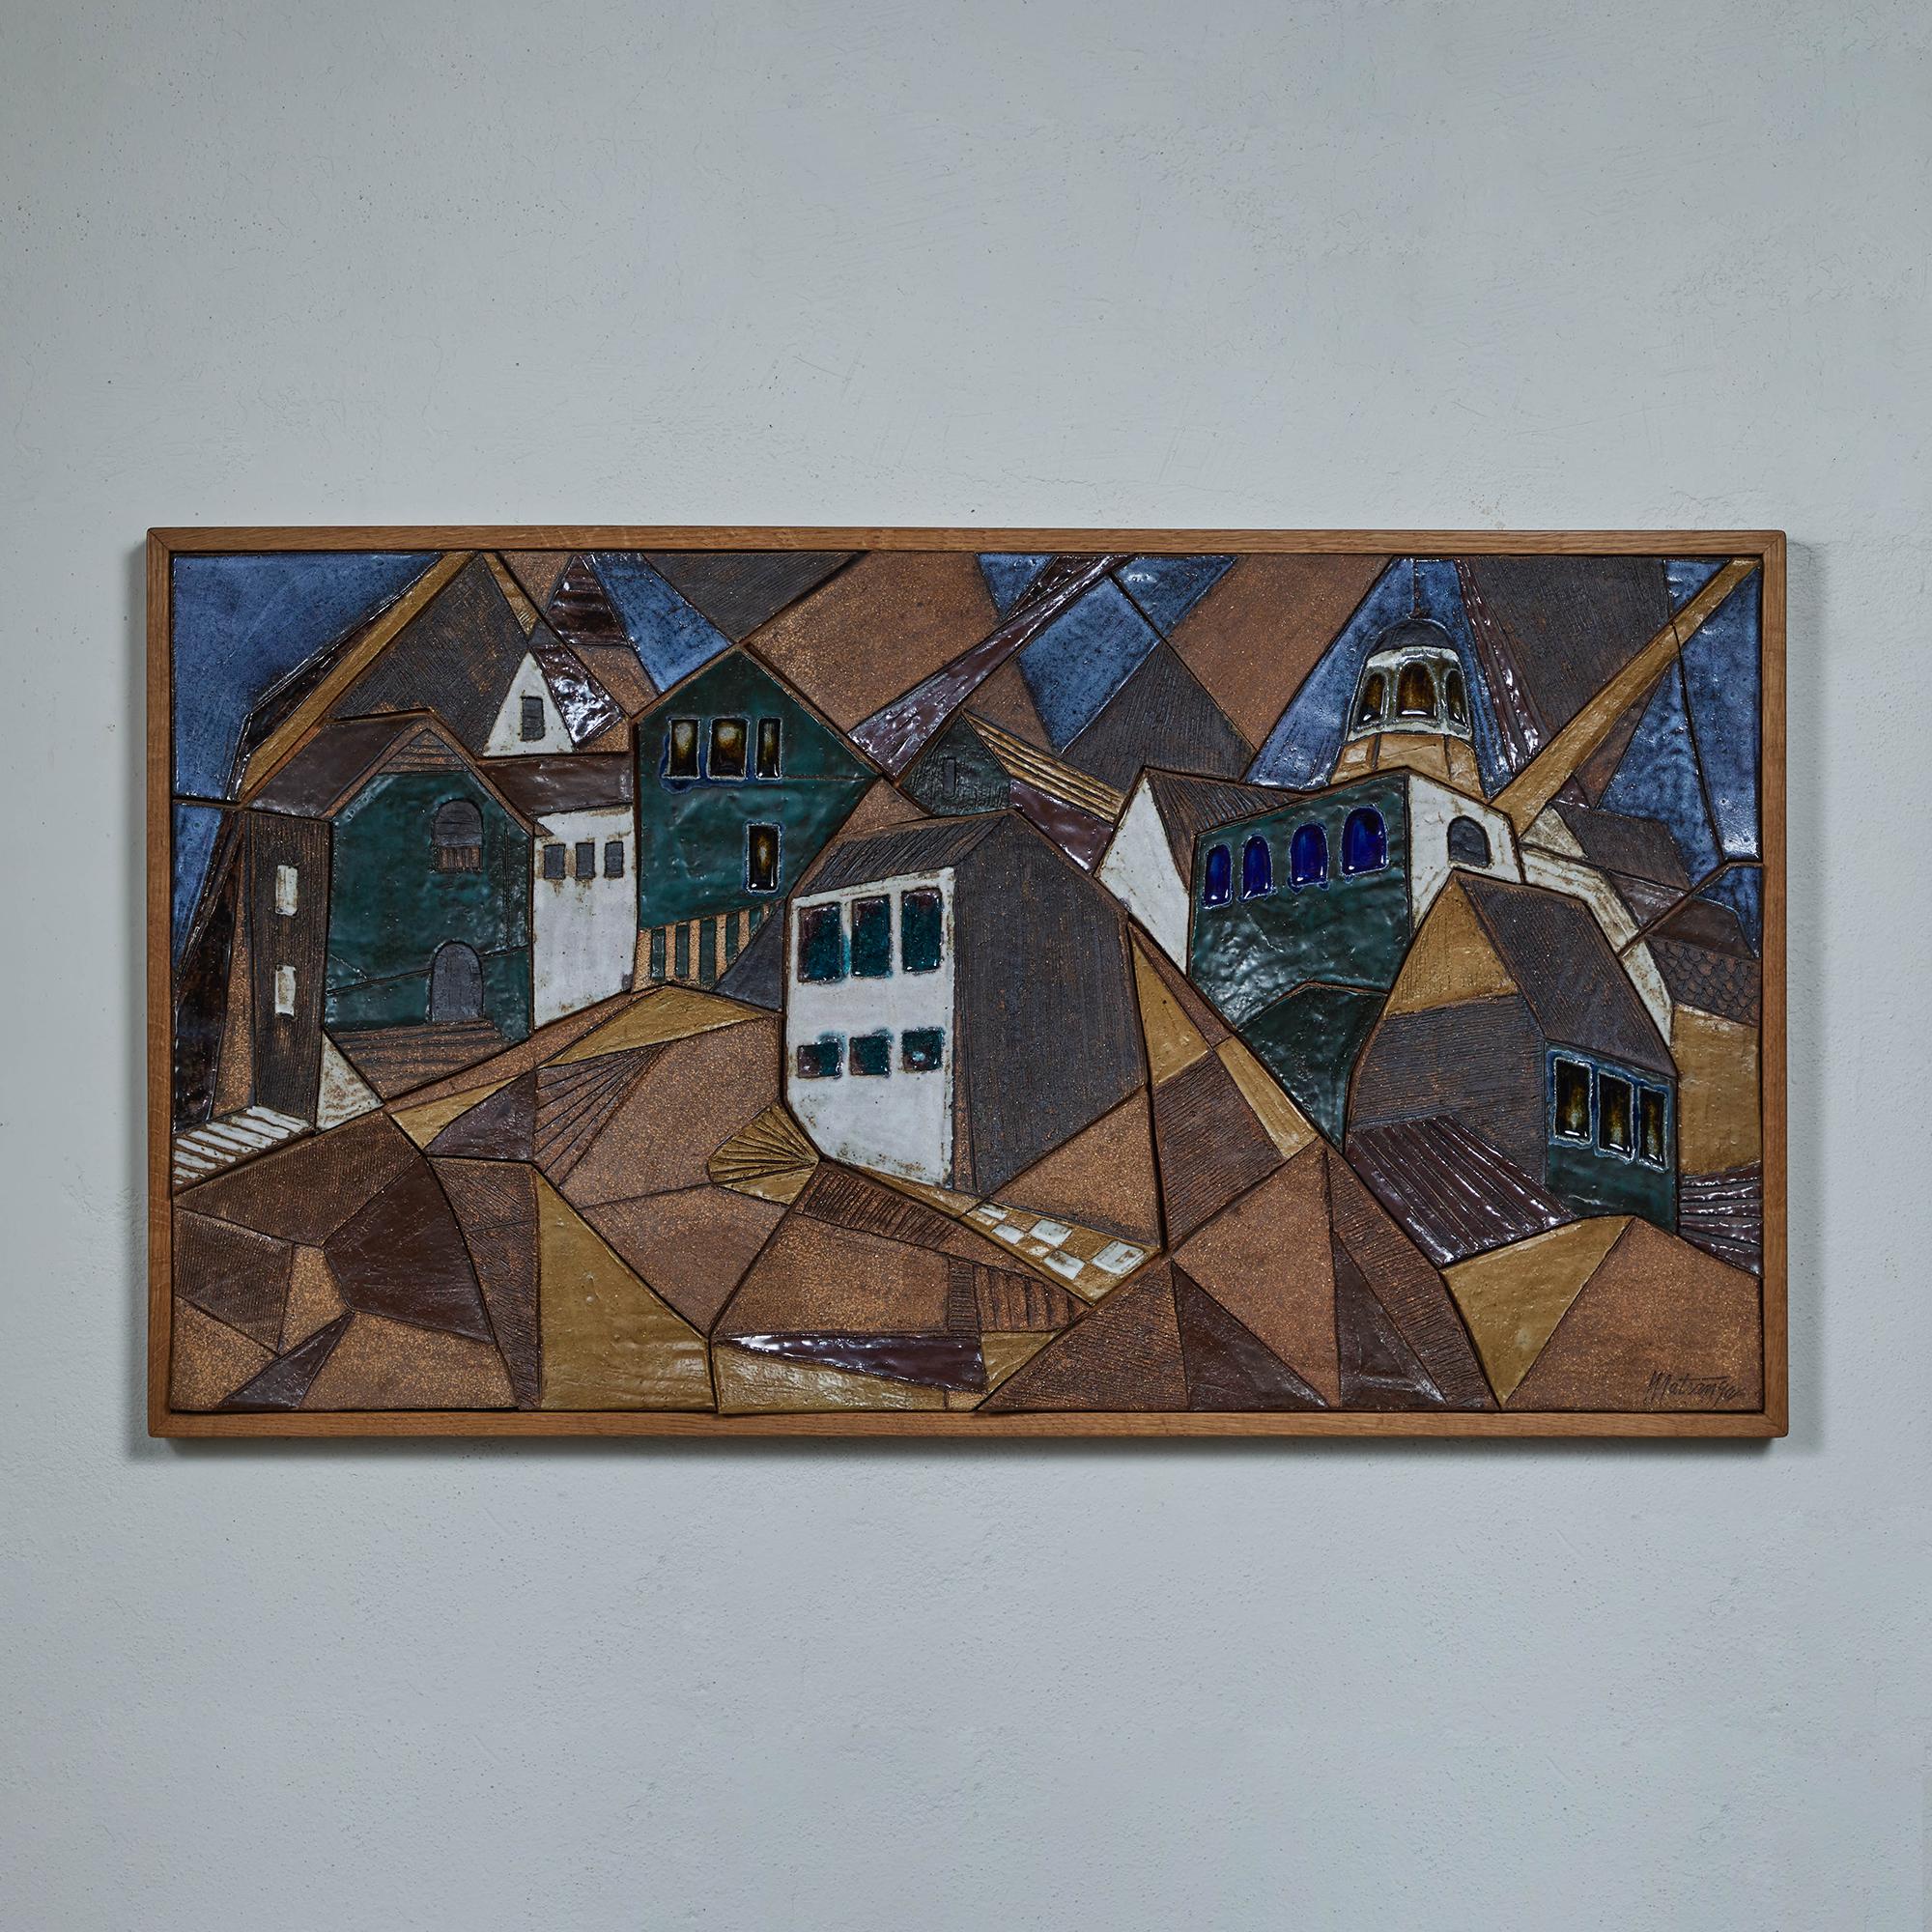 Mosaikfliesen-Kunstwerk des kalifornischen Keramikers Frank Matranga, ca. 1960er Jahre, USA. Dieses Stück besteht aus unterschiedlich geformten glasierten Keramikfliesen, die ein Mosaik-Stadtbild ergeben. Die Farben reichen von Blau über Grün bis